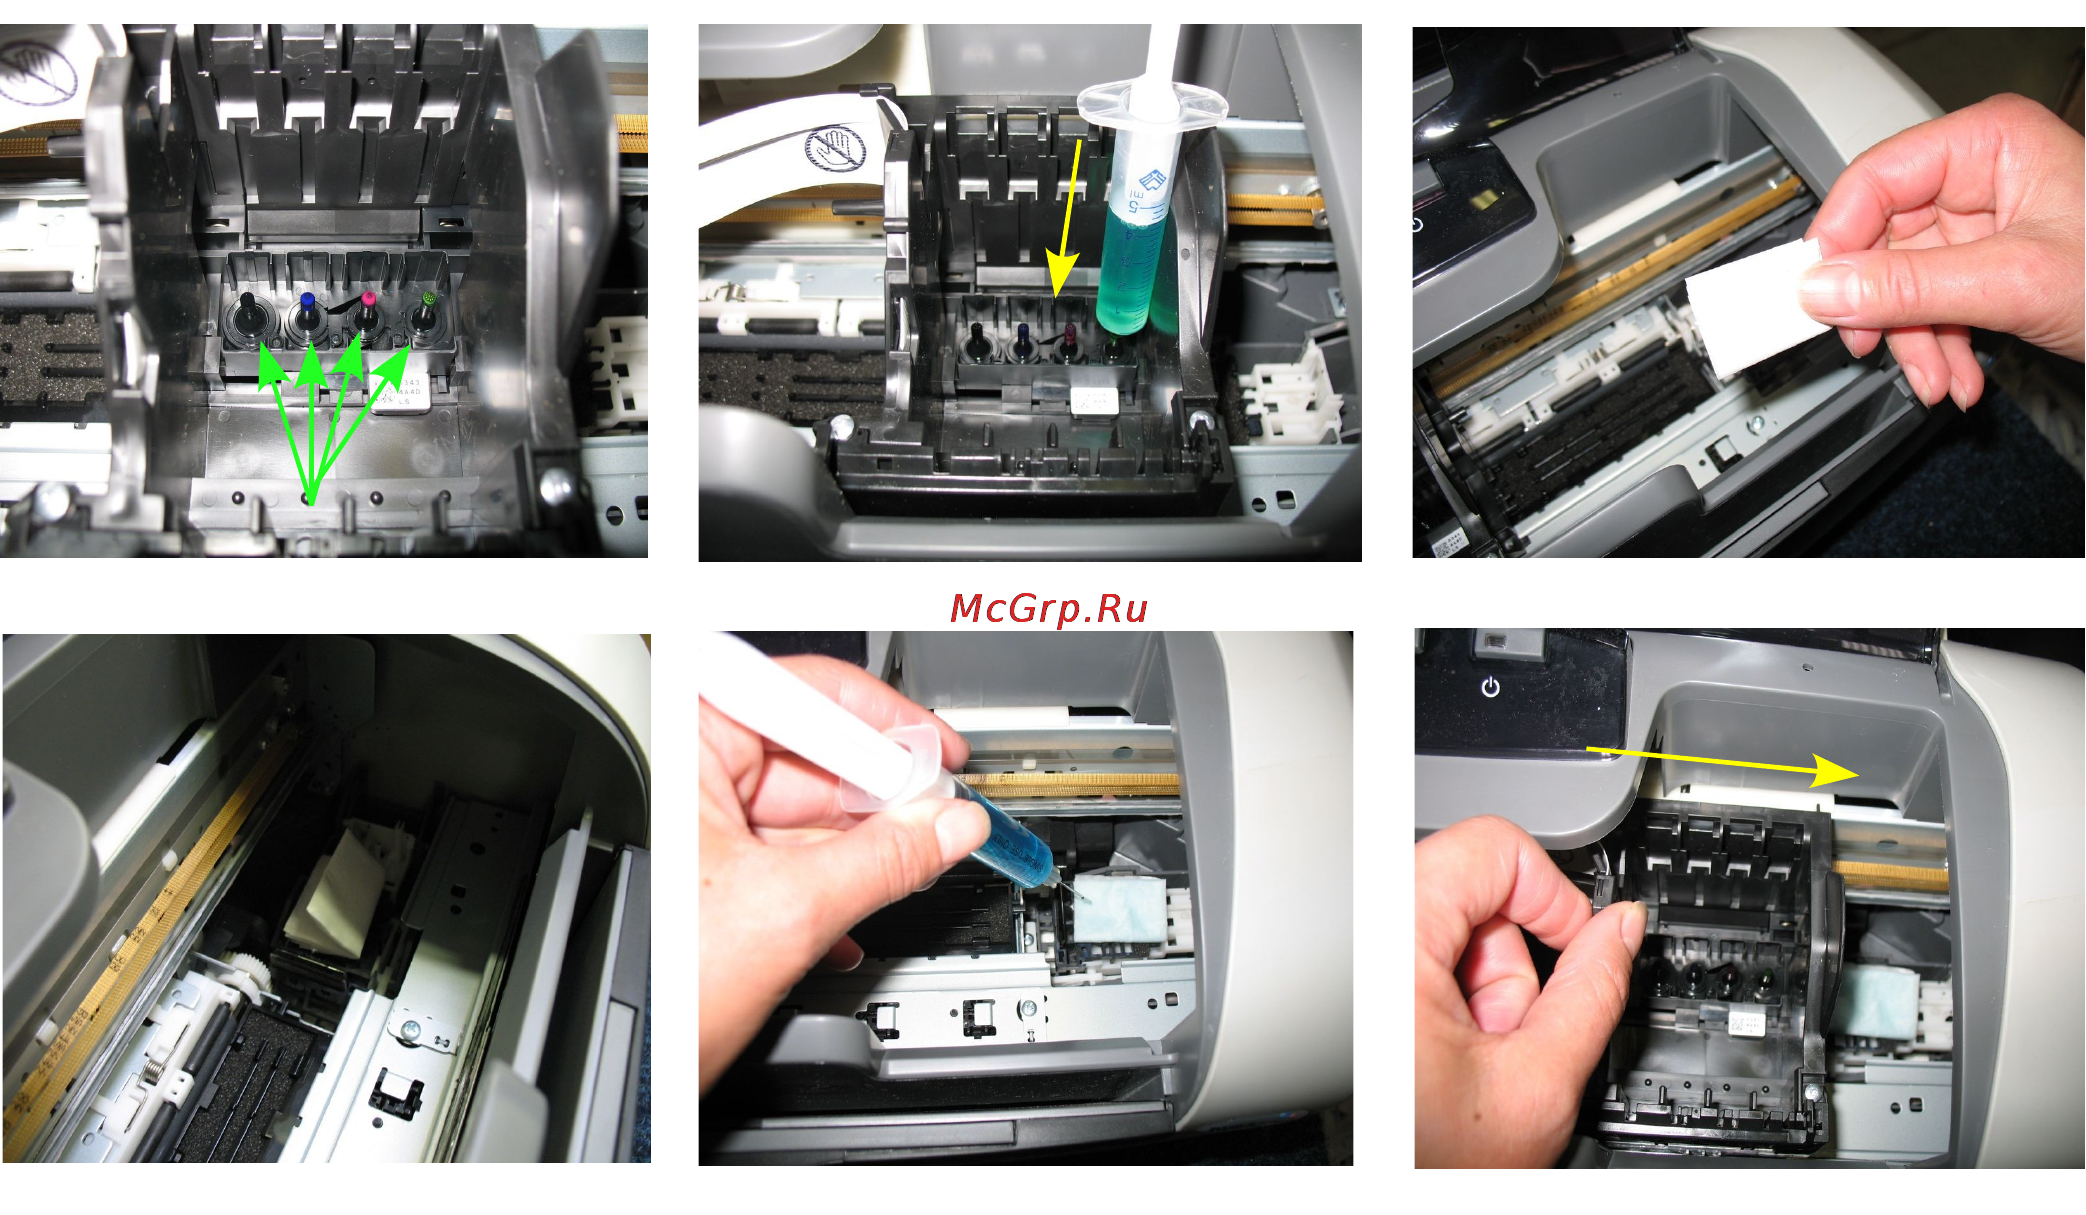 Как прочистить картридж принтера canon, hp, epson, samsung и других брендов в домашних условиях